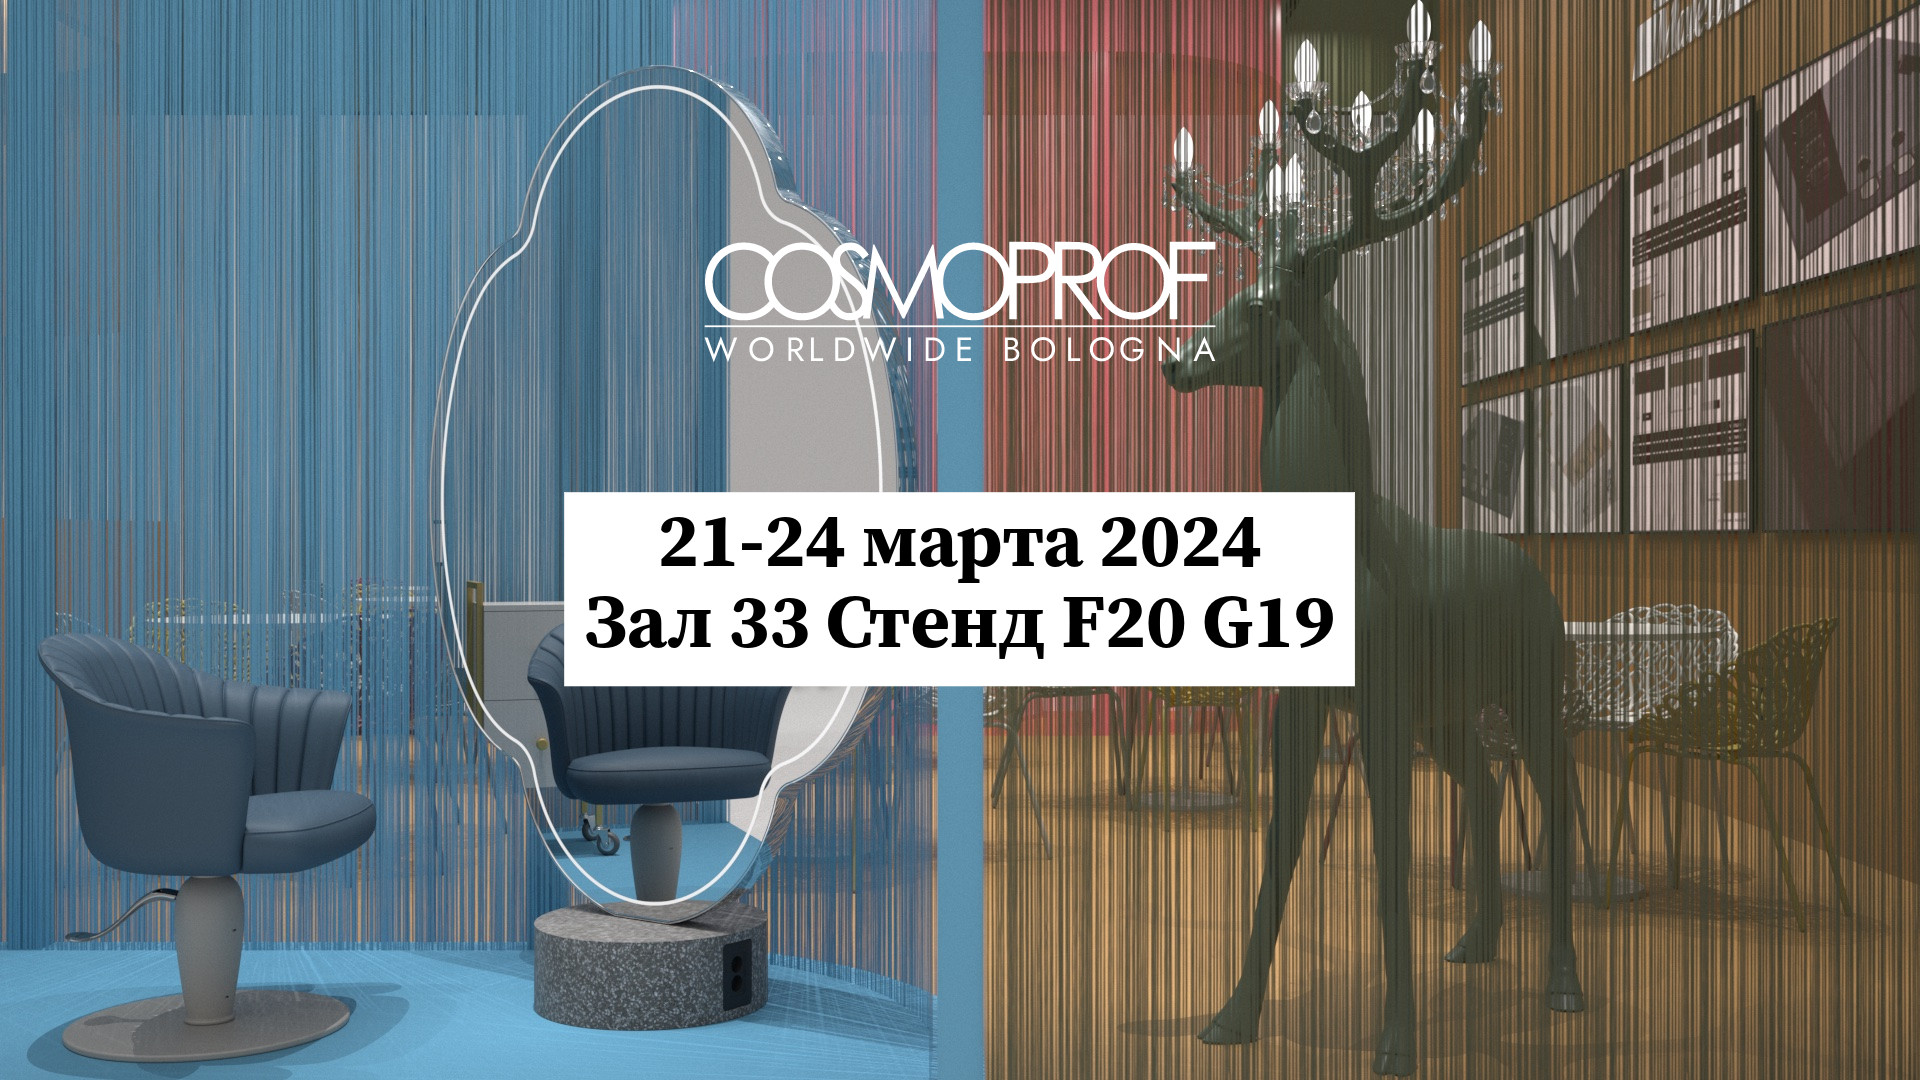 Уникальность инноваций Maletti на выставке Cosmoprof 2024